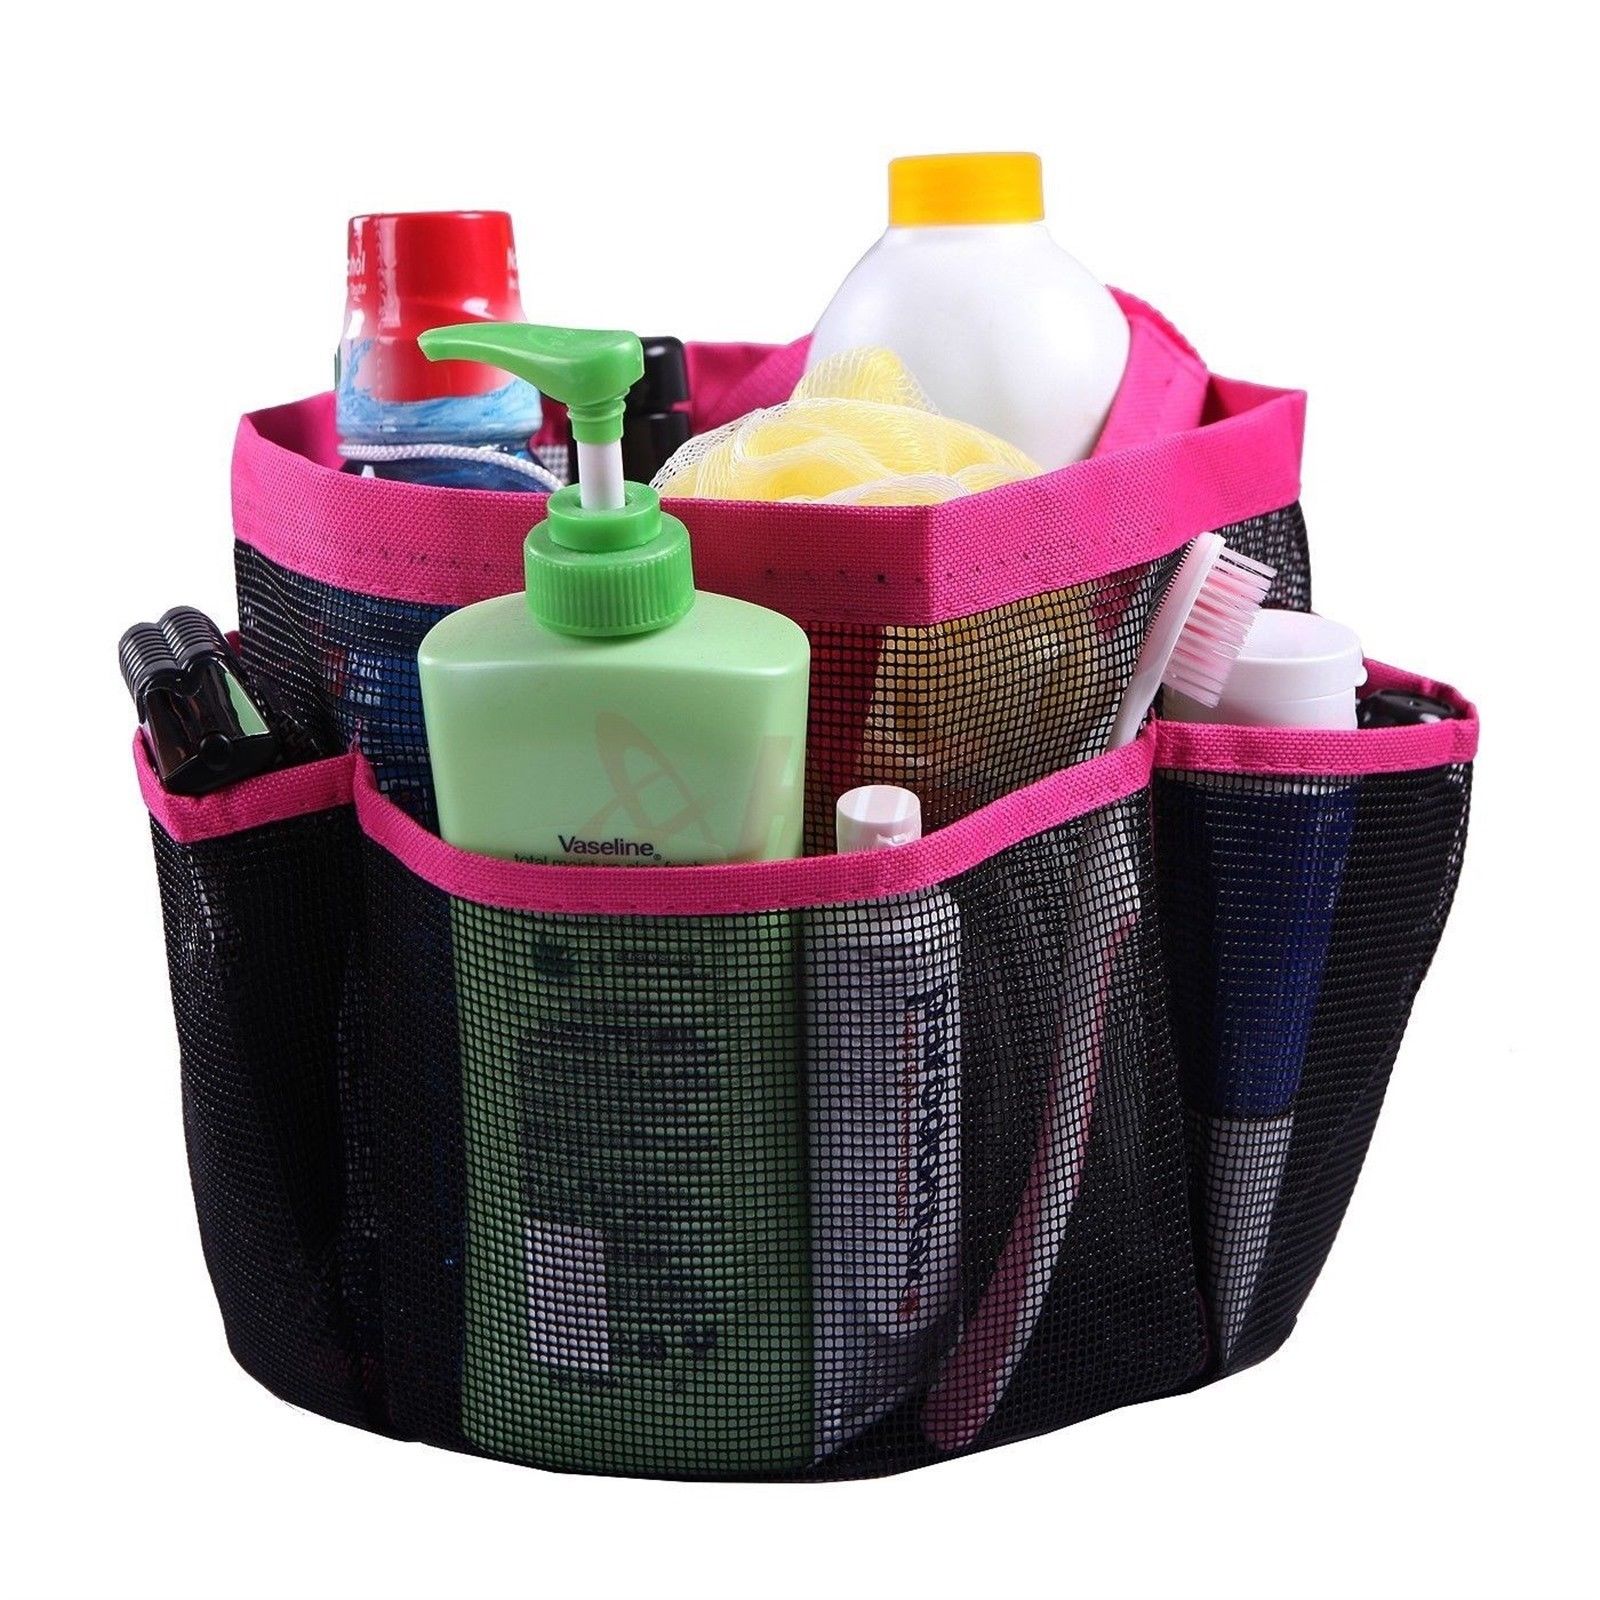 Brusere caddy mesh 8 lomme bærbare opbevaringstasker hurtigtørrende styrke oxford stof + pvctravel tote bære gym kollegieværelse container: Rose